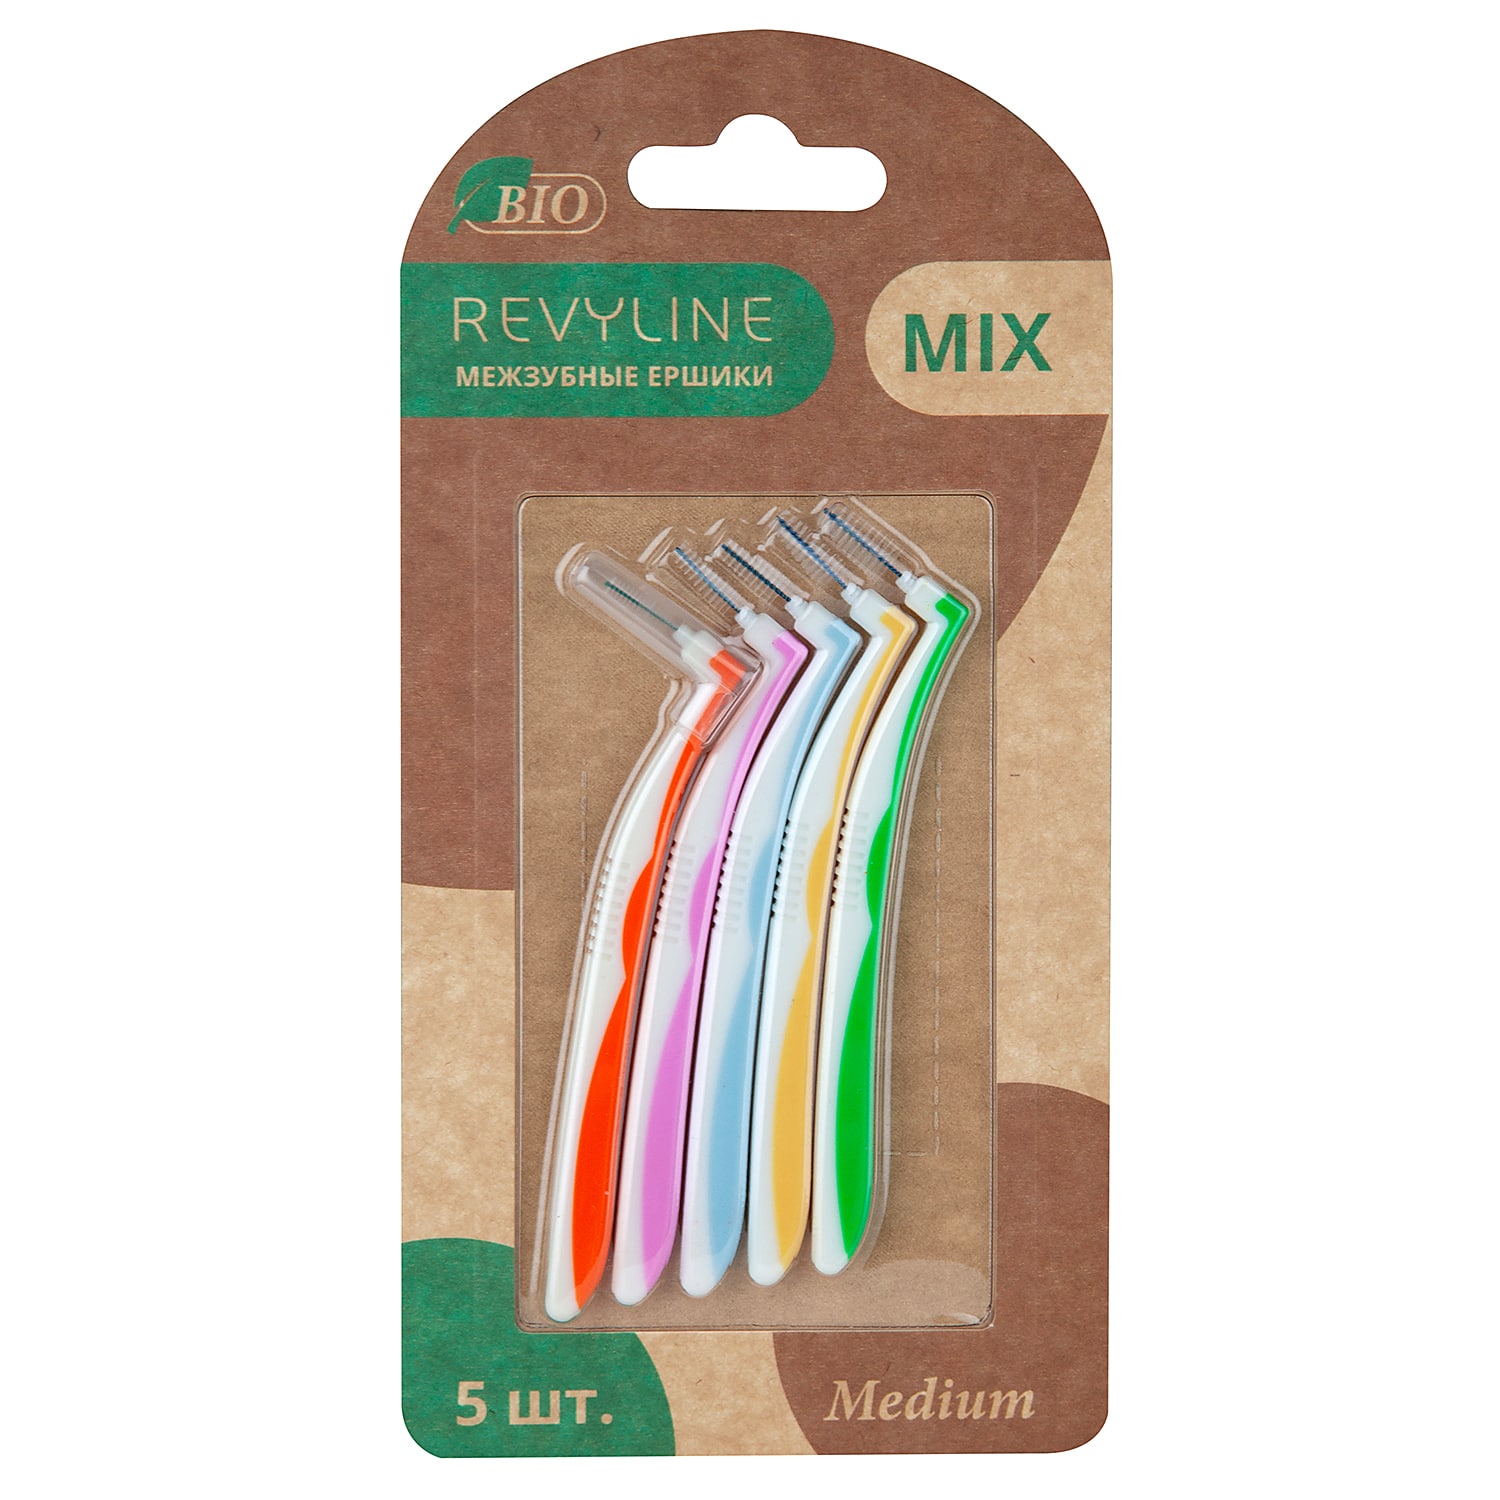 

REVYLINE Набор межзубных ершиков Mix Medium, 5 шт (REVYLINE, Мануальные зубные щетки), Мануальные зубные щетки